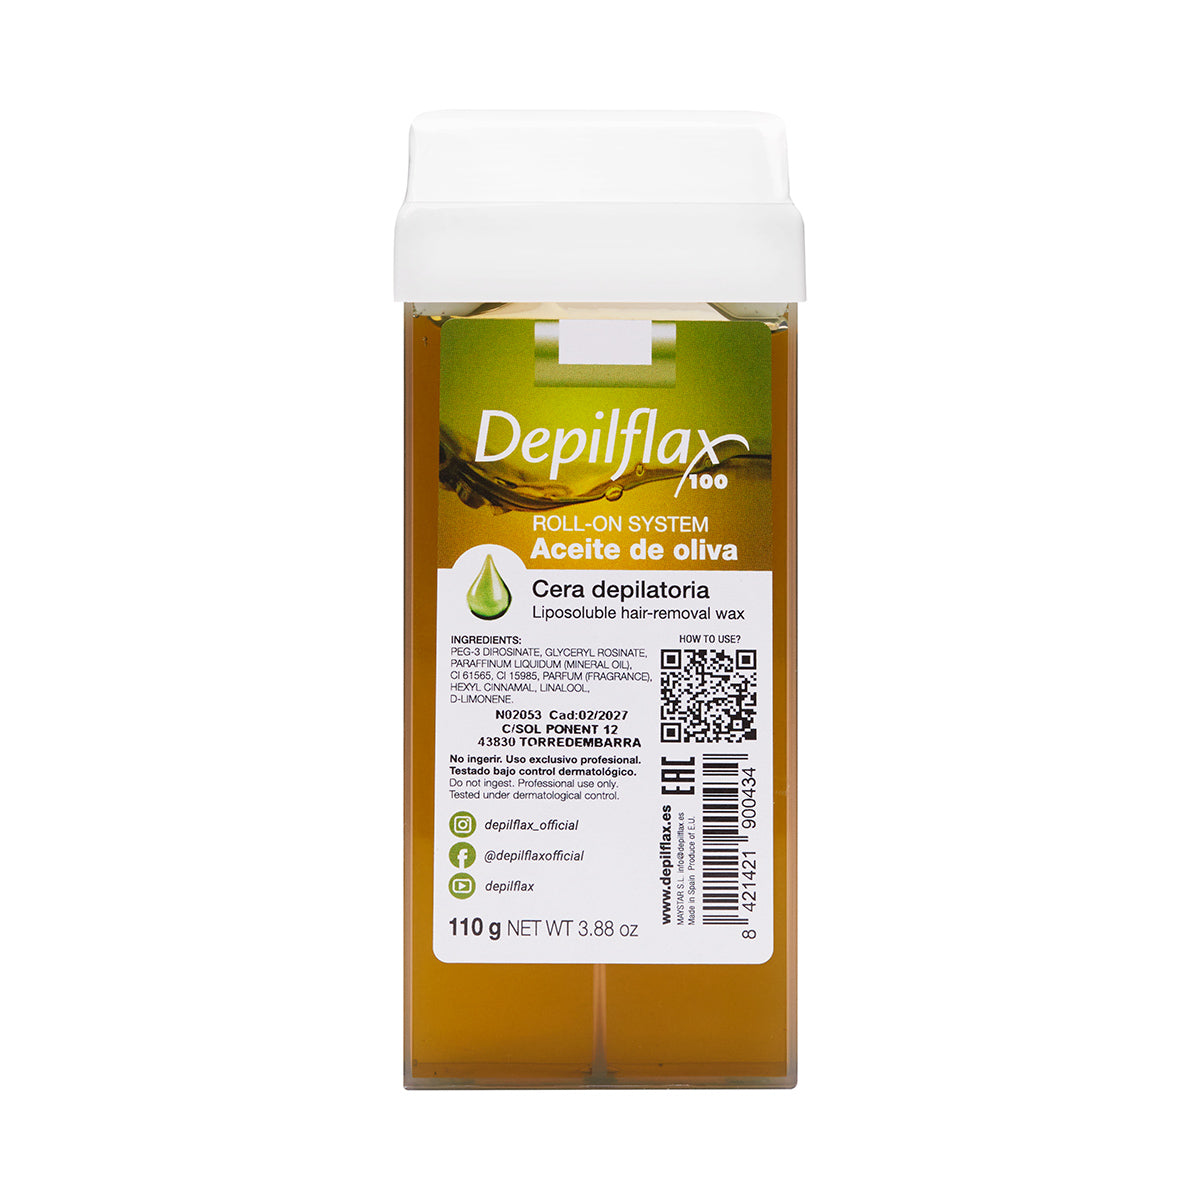 Depilflax 100 depilatory wax roll olive 110g